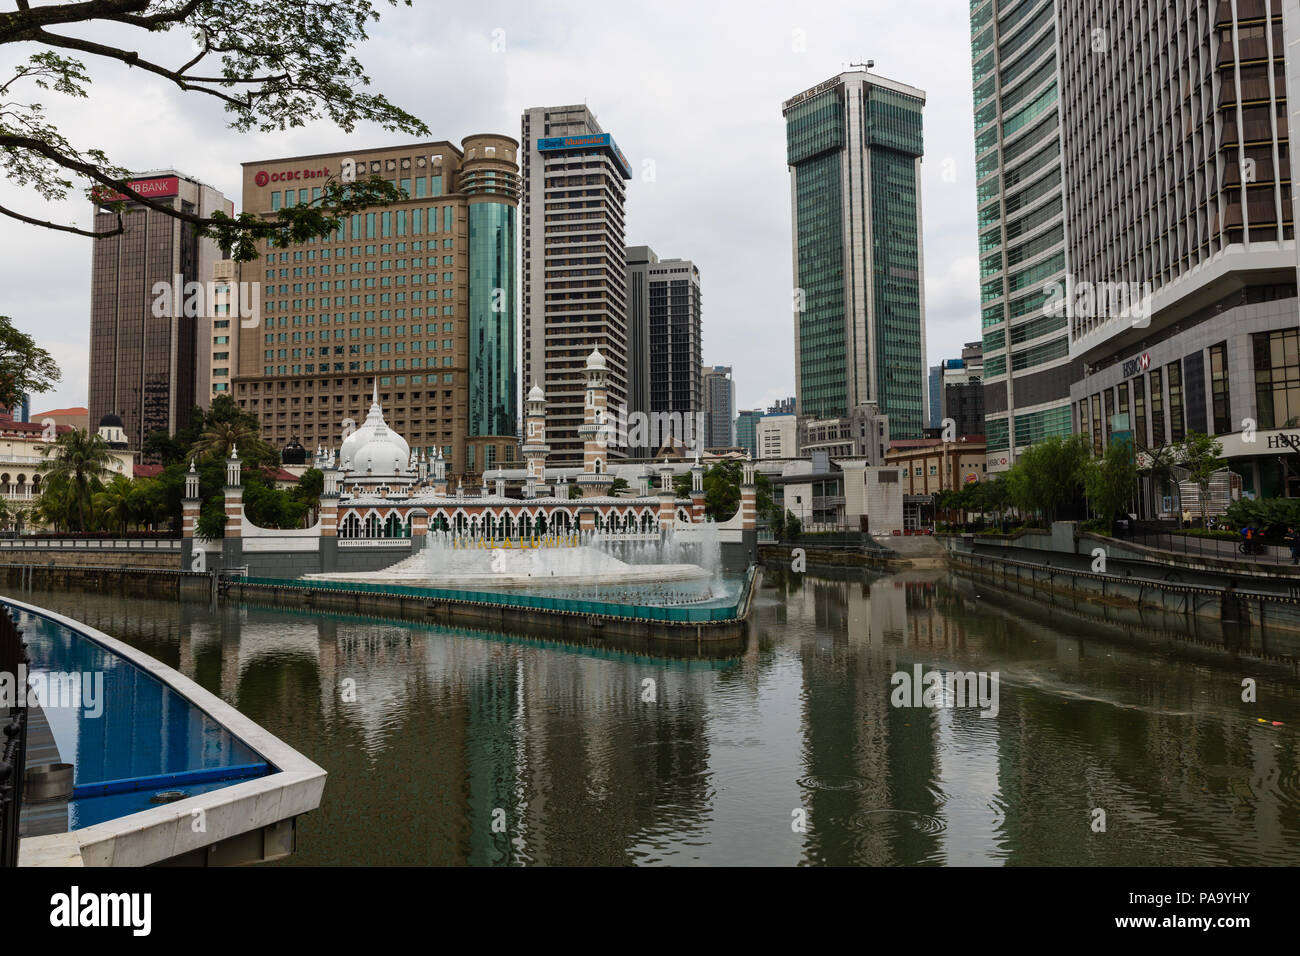 Masjid Jamek Moschee Sultan Abdul Samad am Zusammenfluss der beiden Flüsse, die von Gebäuden unterschiedlichen Alters umgeben. Kuala Lumpur, Malaysia Stockfoto